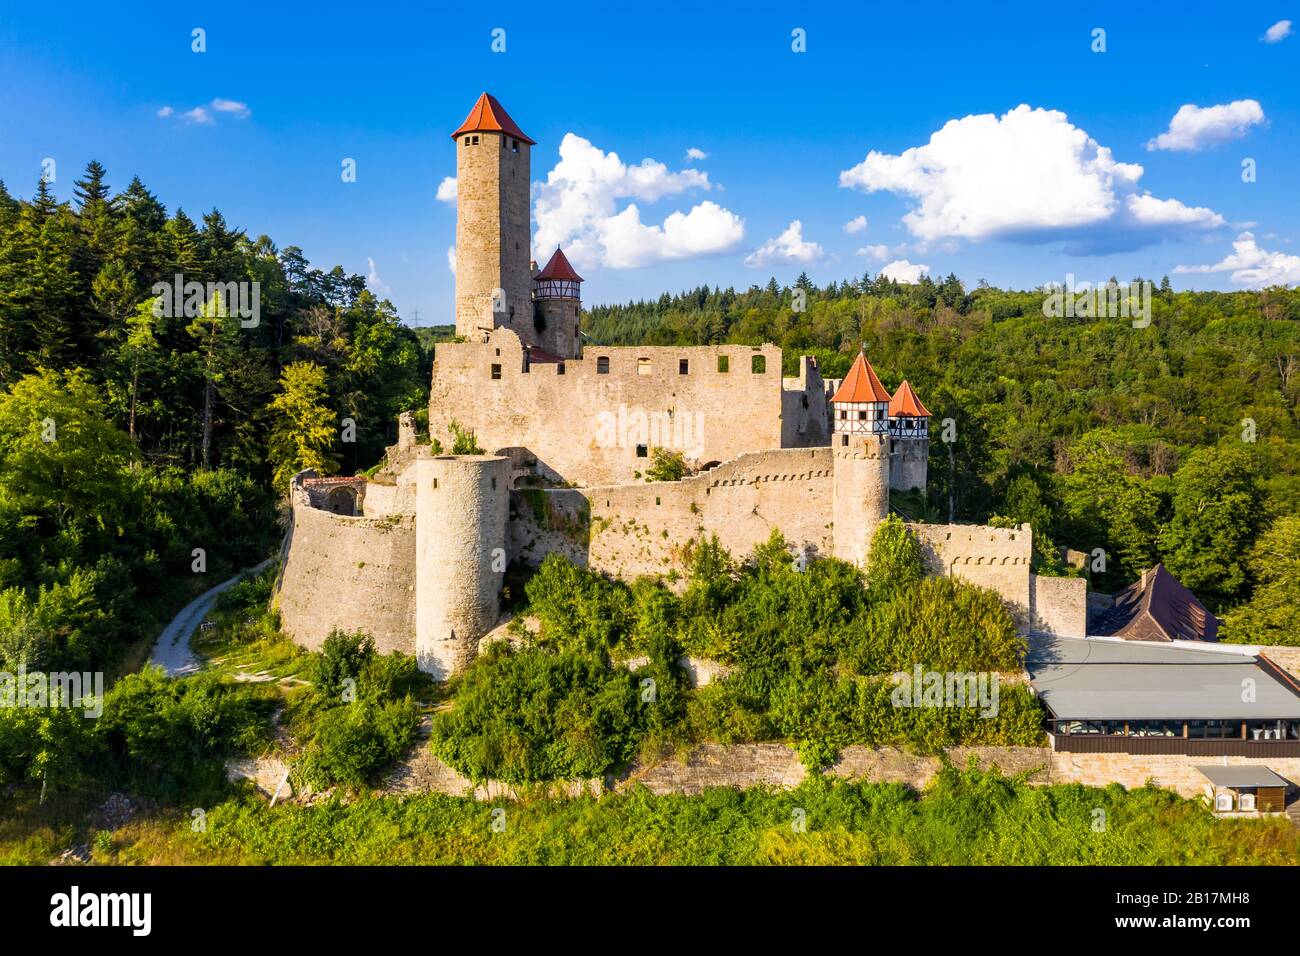 Germany, Baden-Wurtemberg, Neckarzimmern, Hornberg Castle in summer Stock Photo